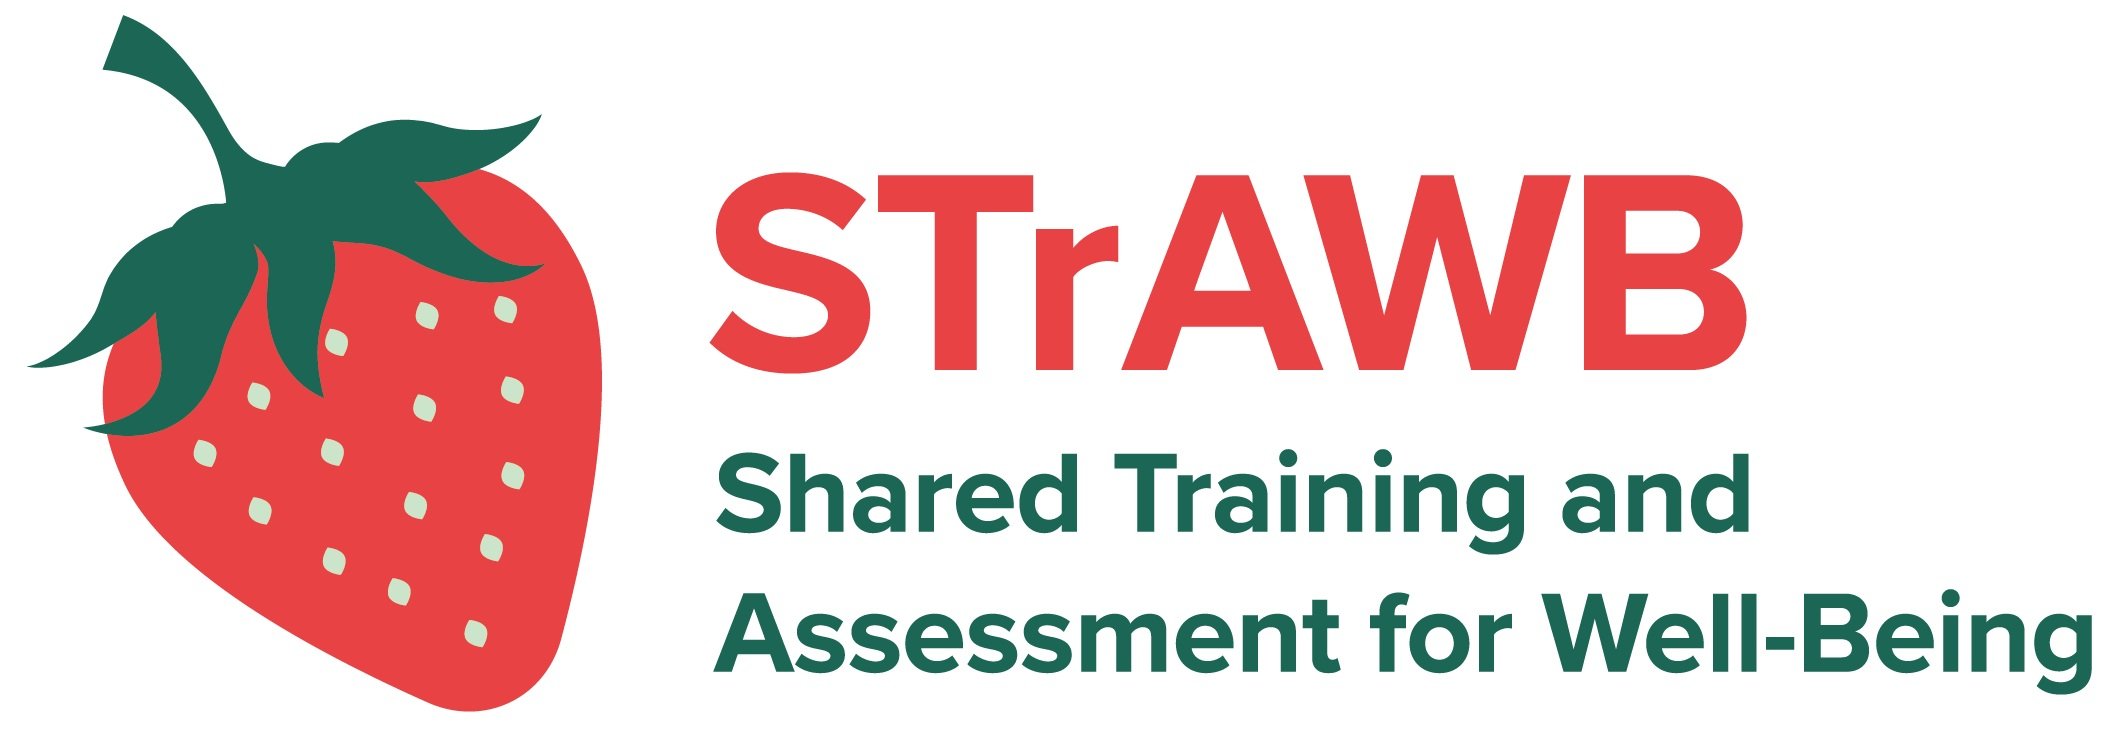 STrAWB+logo-01.jpg